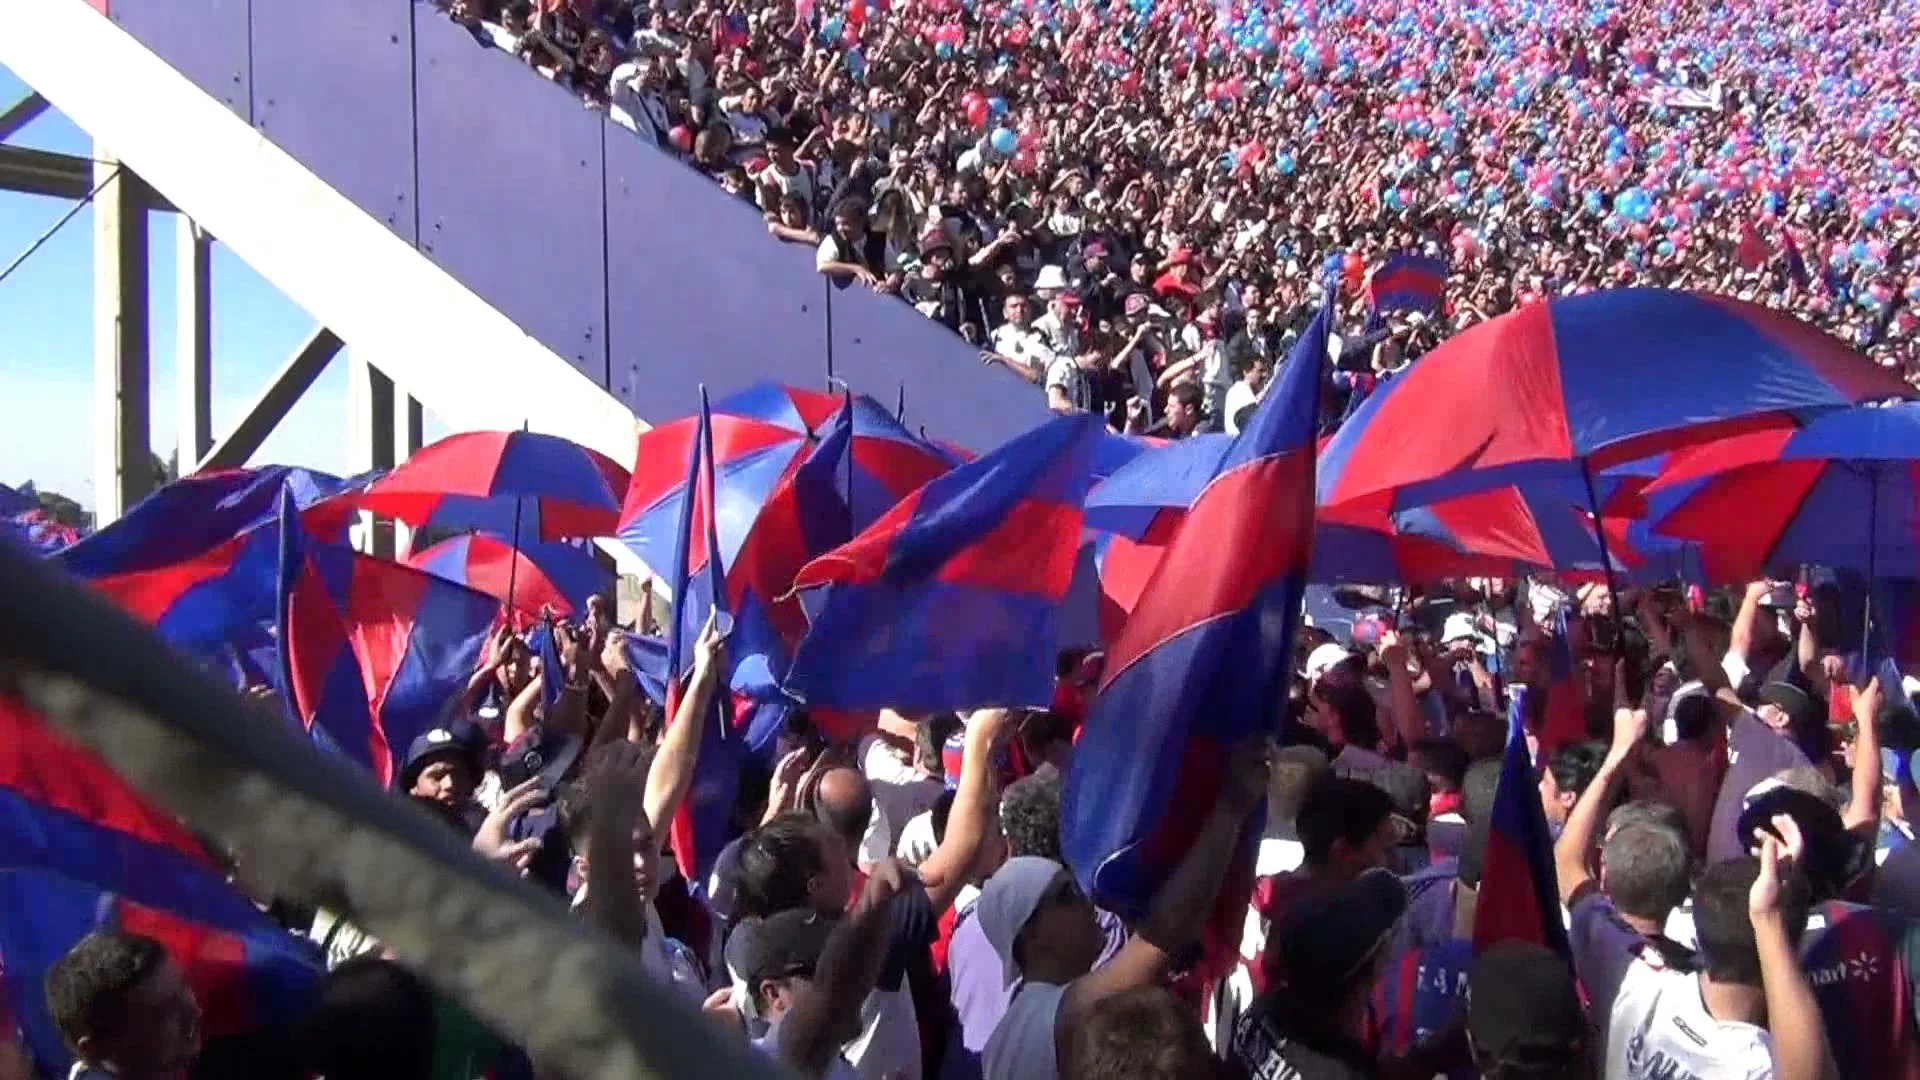 TIFOSERIA UNICA! I supporters del San Lorenzo cantano “Despacito”